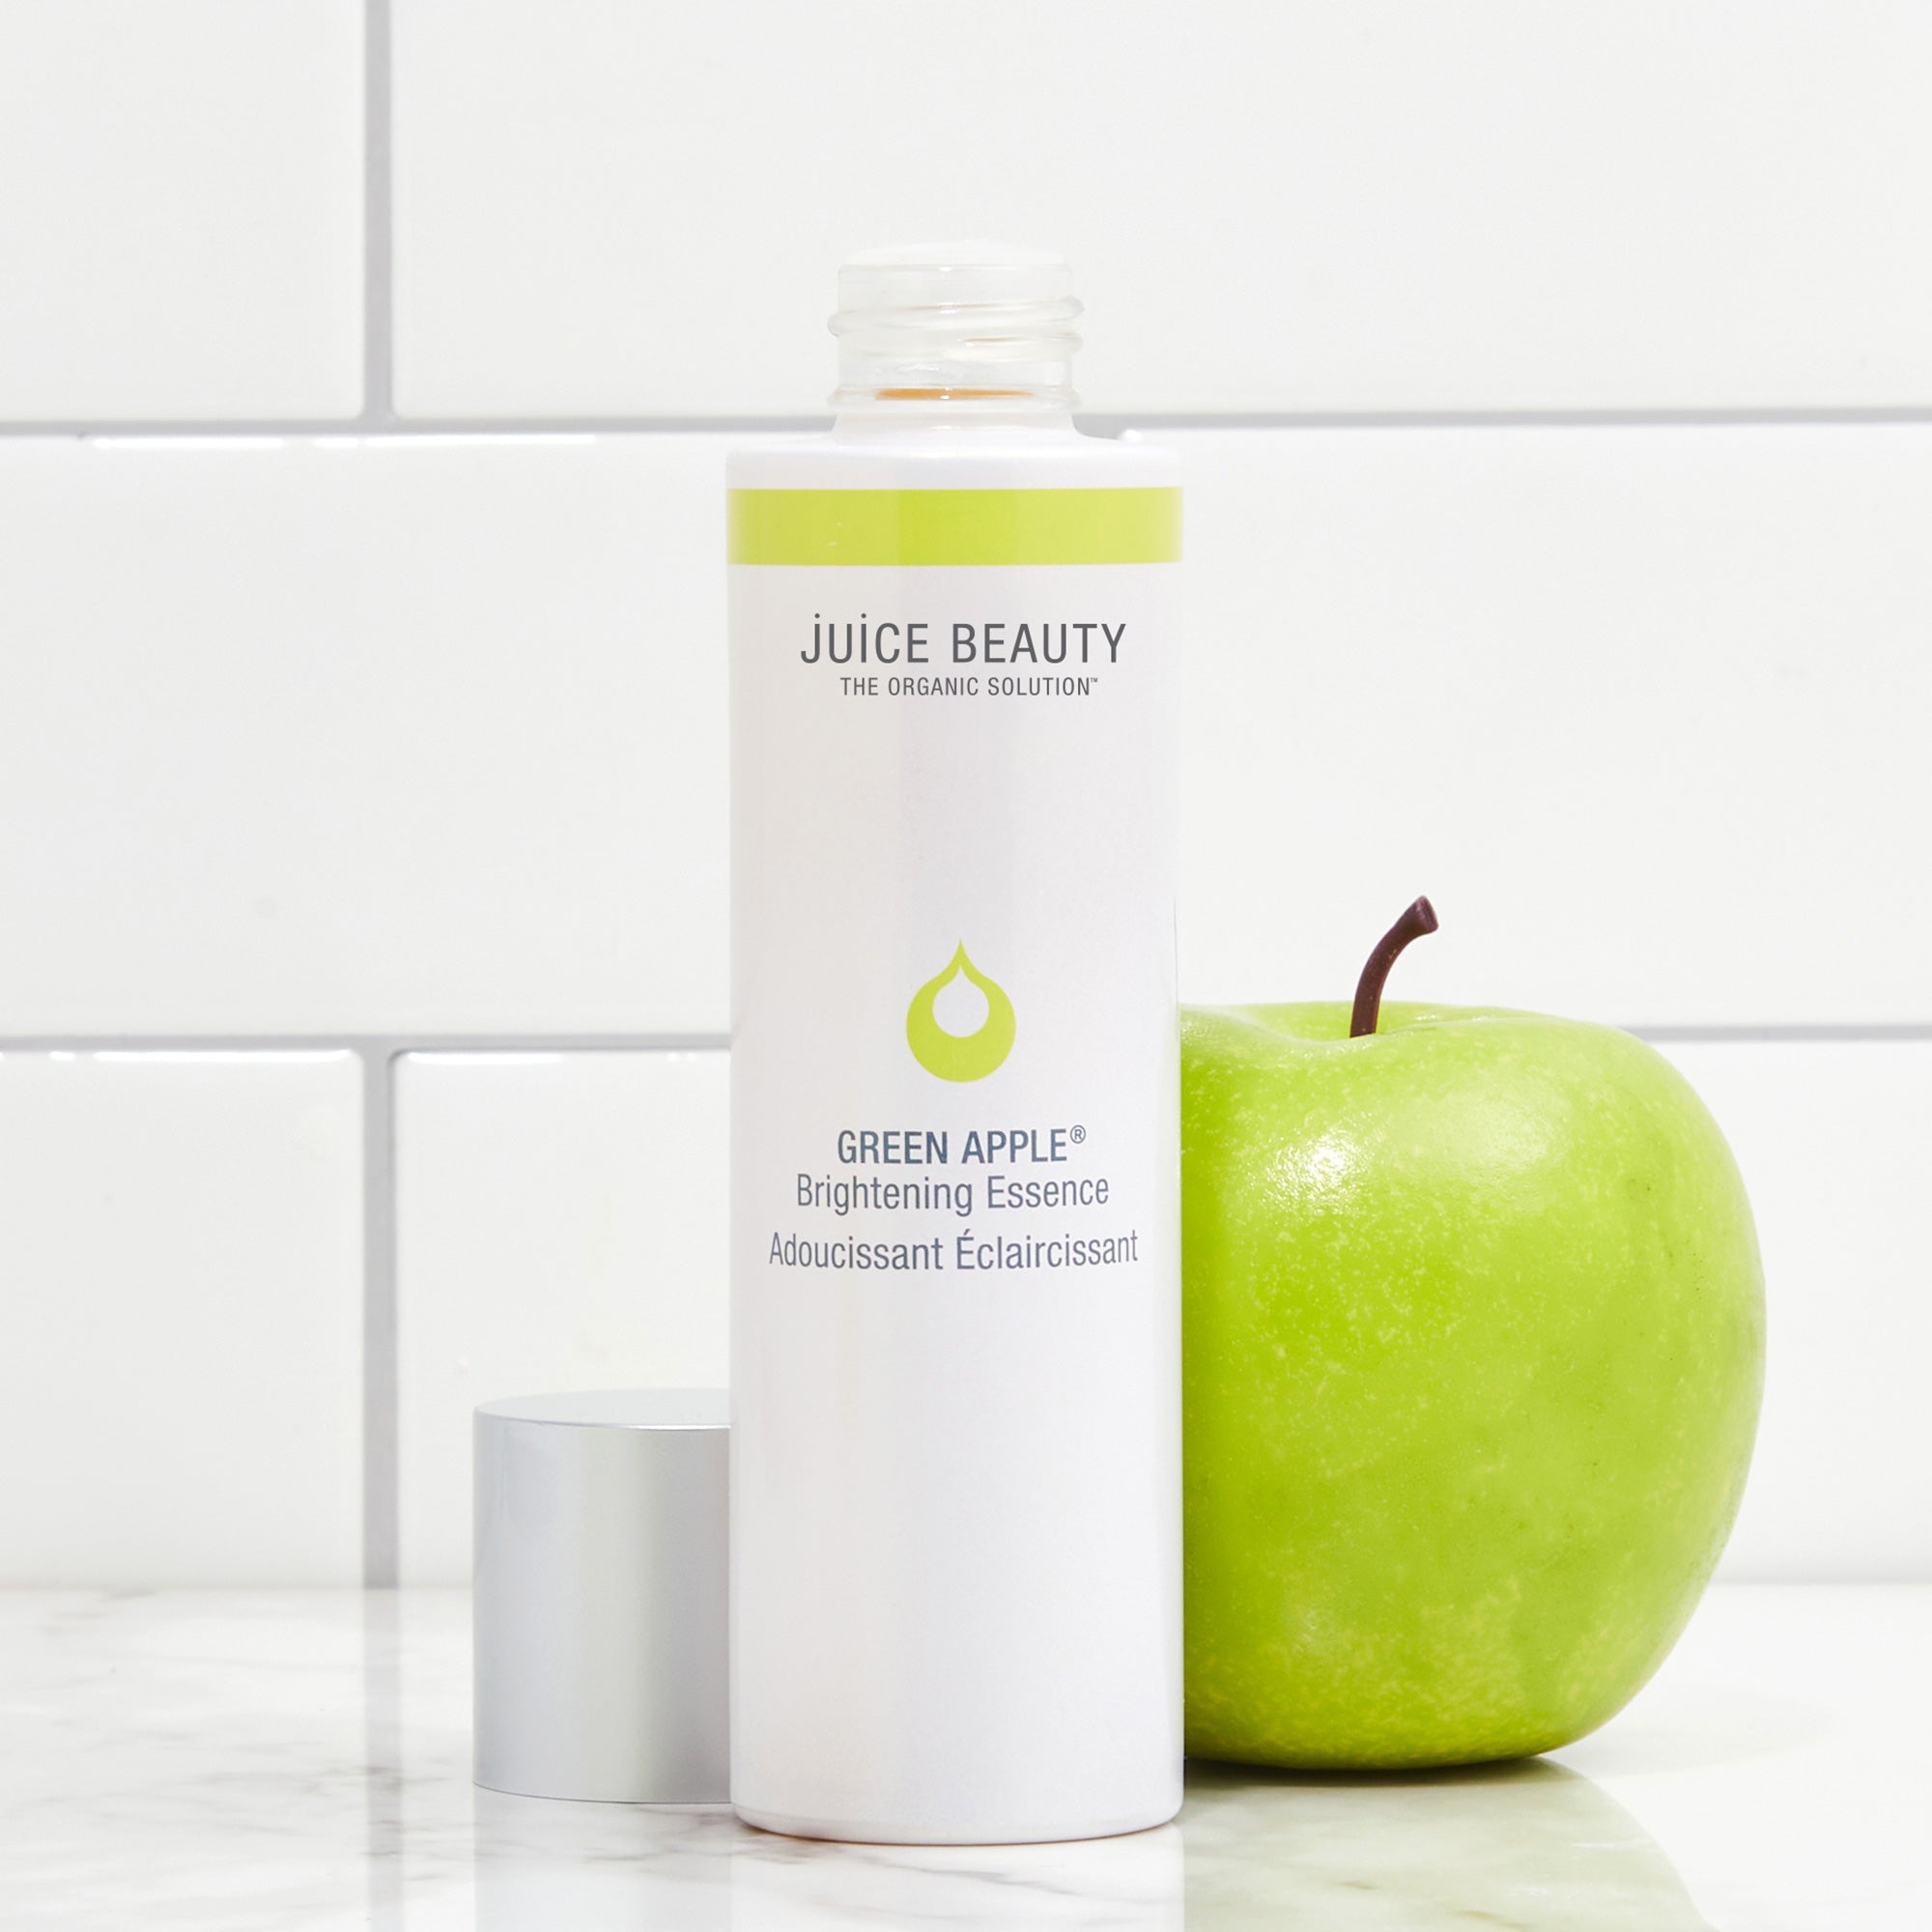 Juice Beauty Green Apple Brightening Gel Cleanser - 4.5 fl oz